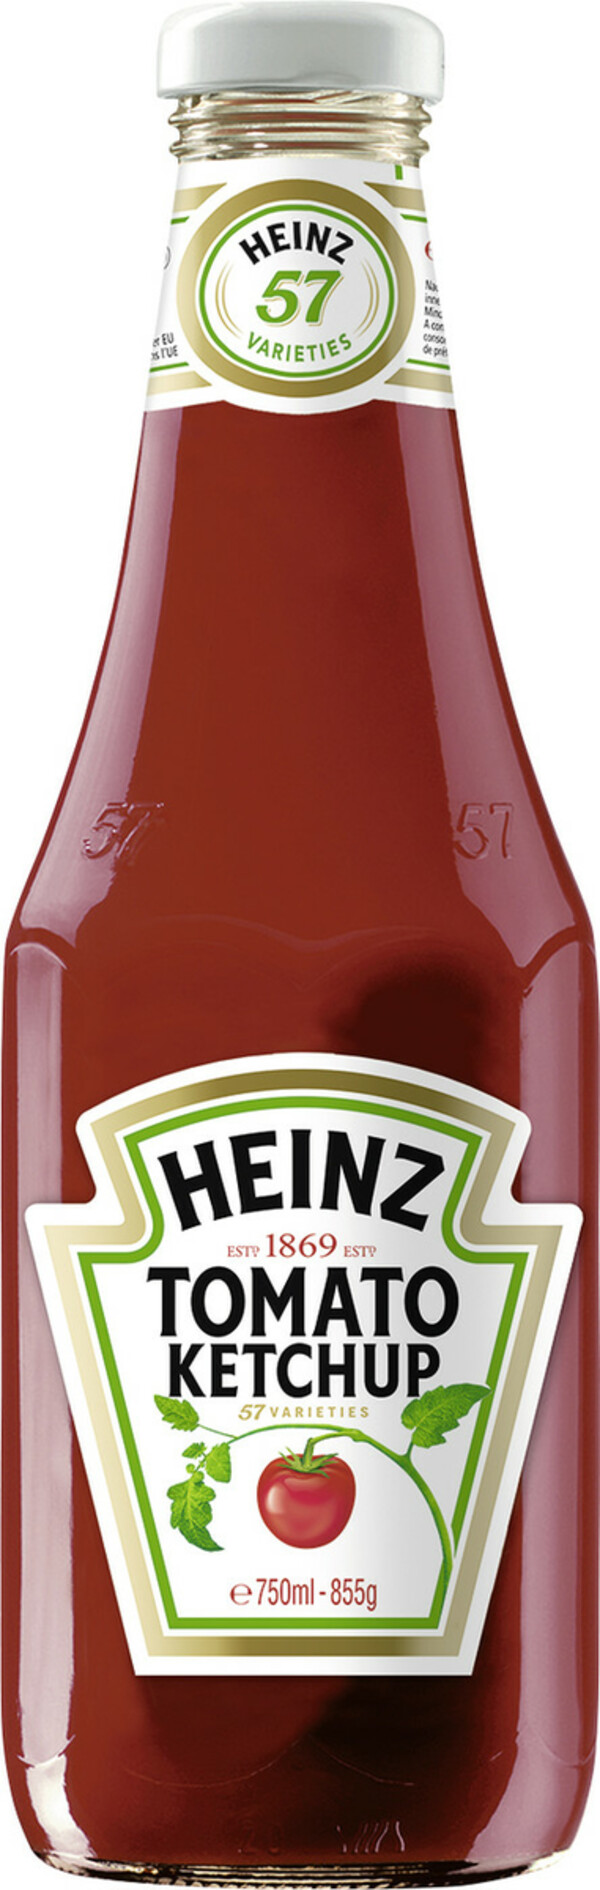 Bild 1 von Heinz Tomato Ketchup 750ML